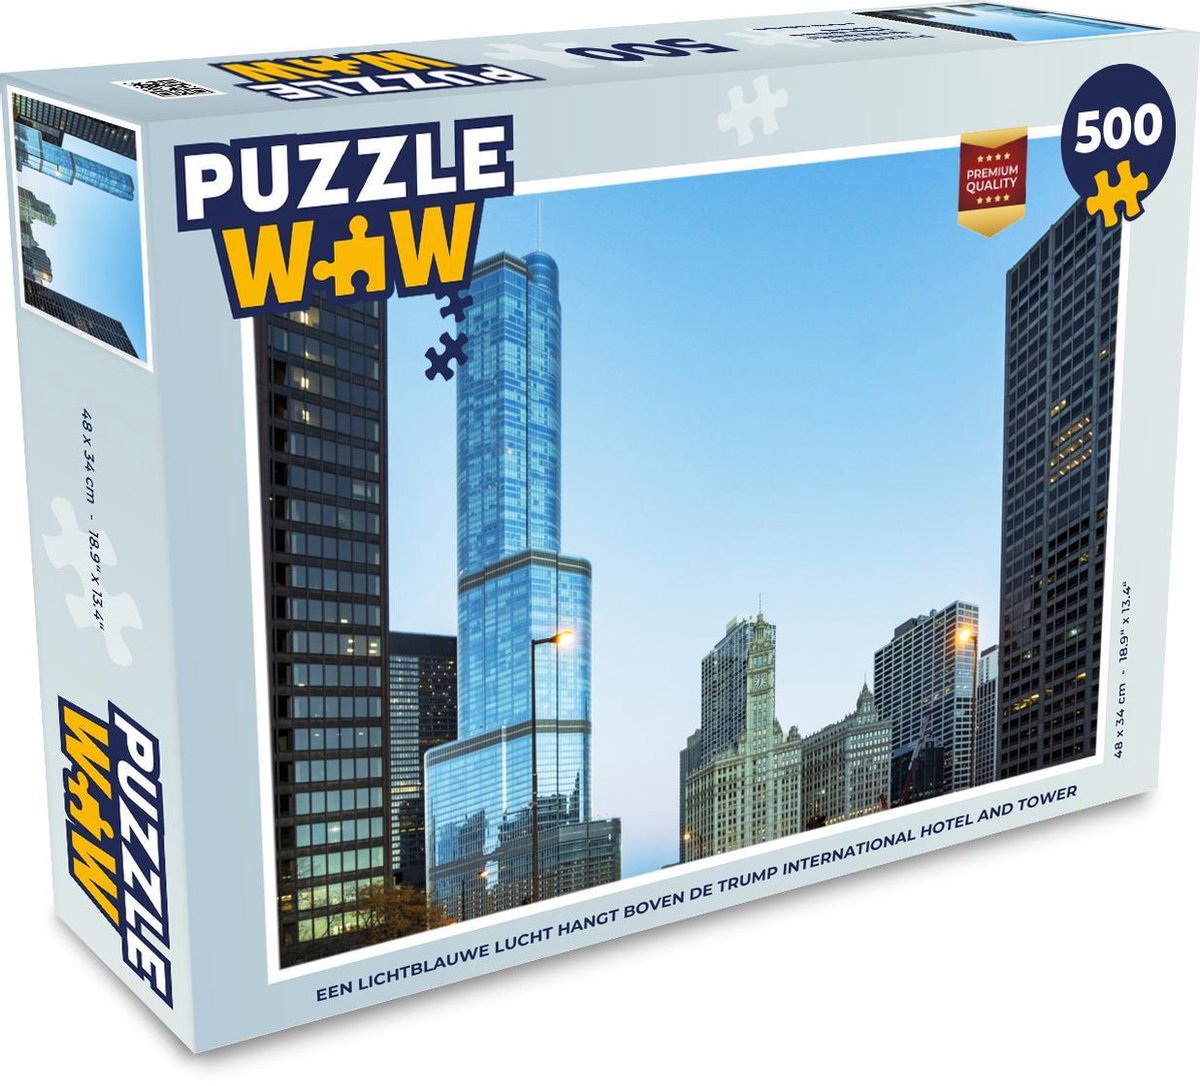 Afbeelding van product Puzzel 500 stukjes Trump International Hotel and Tower - Een lichtblauwe lucht hangt boven de Trump International Hotel and Tower - PuzzleWow heeft +100000 puzzels